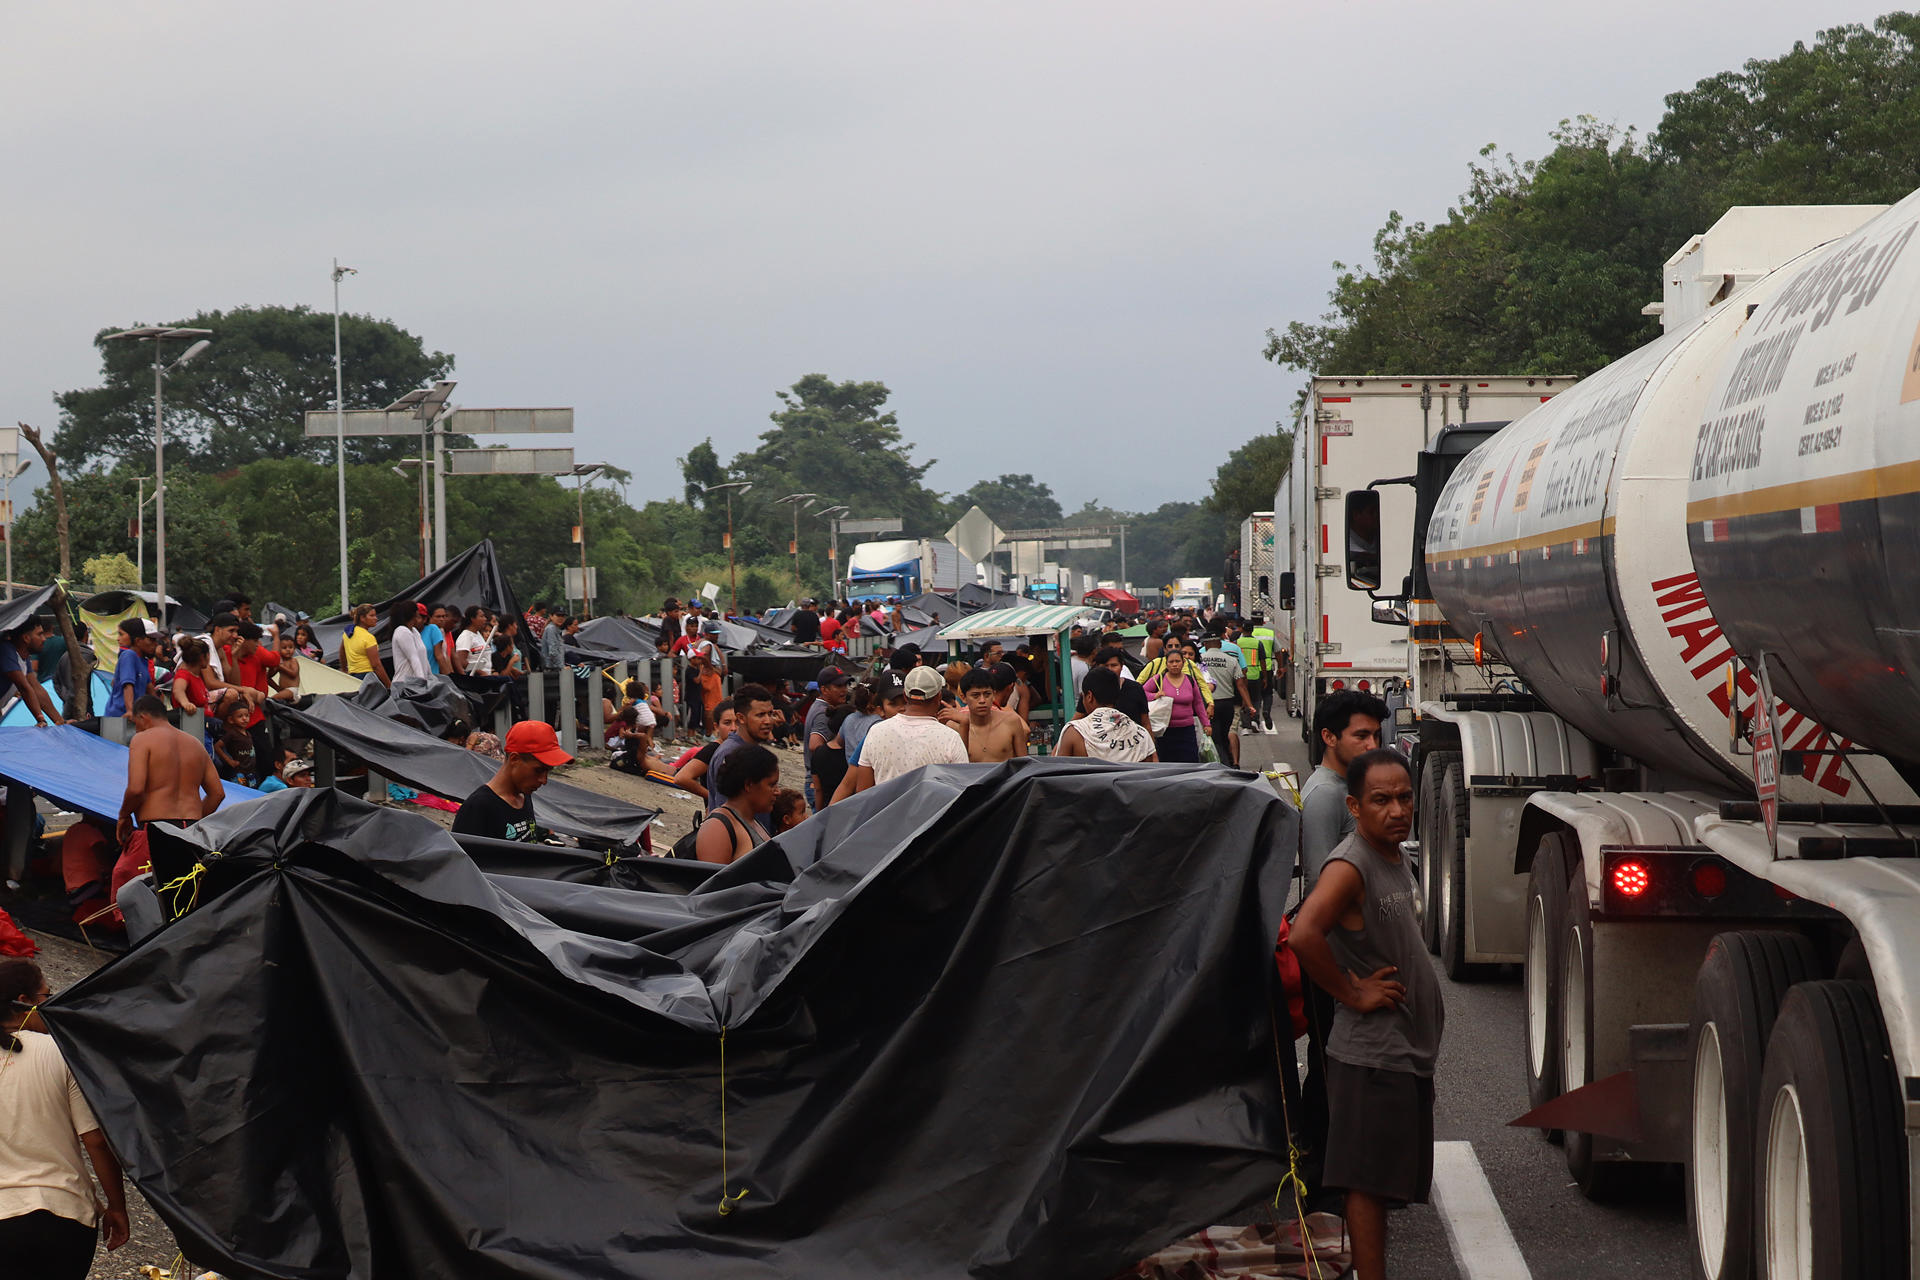 Migrantes que avanzan en caravana permanecen en un campamento improvisado tras un bloqueo carretero hoy, en el municipio de Huixtla en el estado de Chiapas (México). EFE/Juan Manuel Blanco
